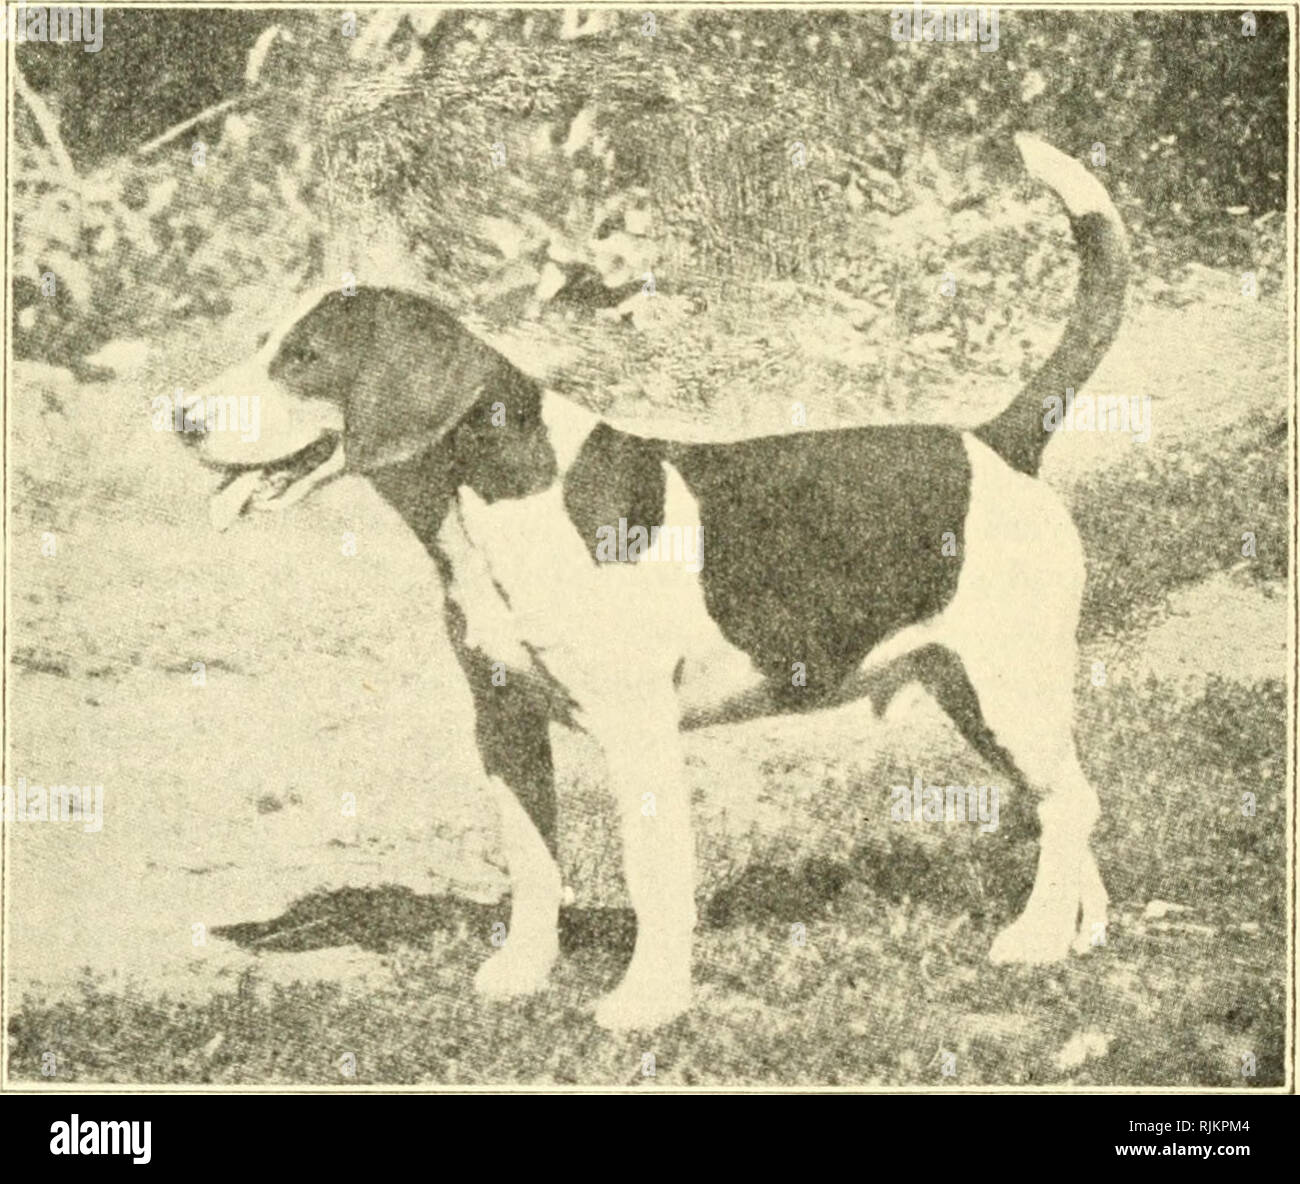 El beagle en América y en Inglaterra. Los beagles (perros). El Beagle en  Inglaterra esperan otros criadores a estar obligado por tales caprichos.  Somerville da lugar una buena descripción de la